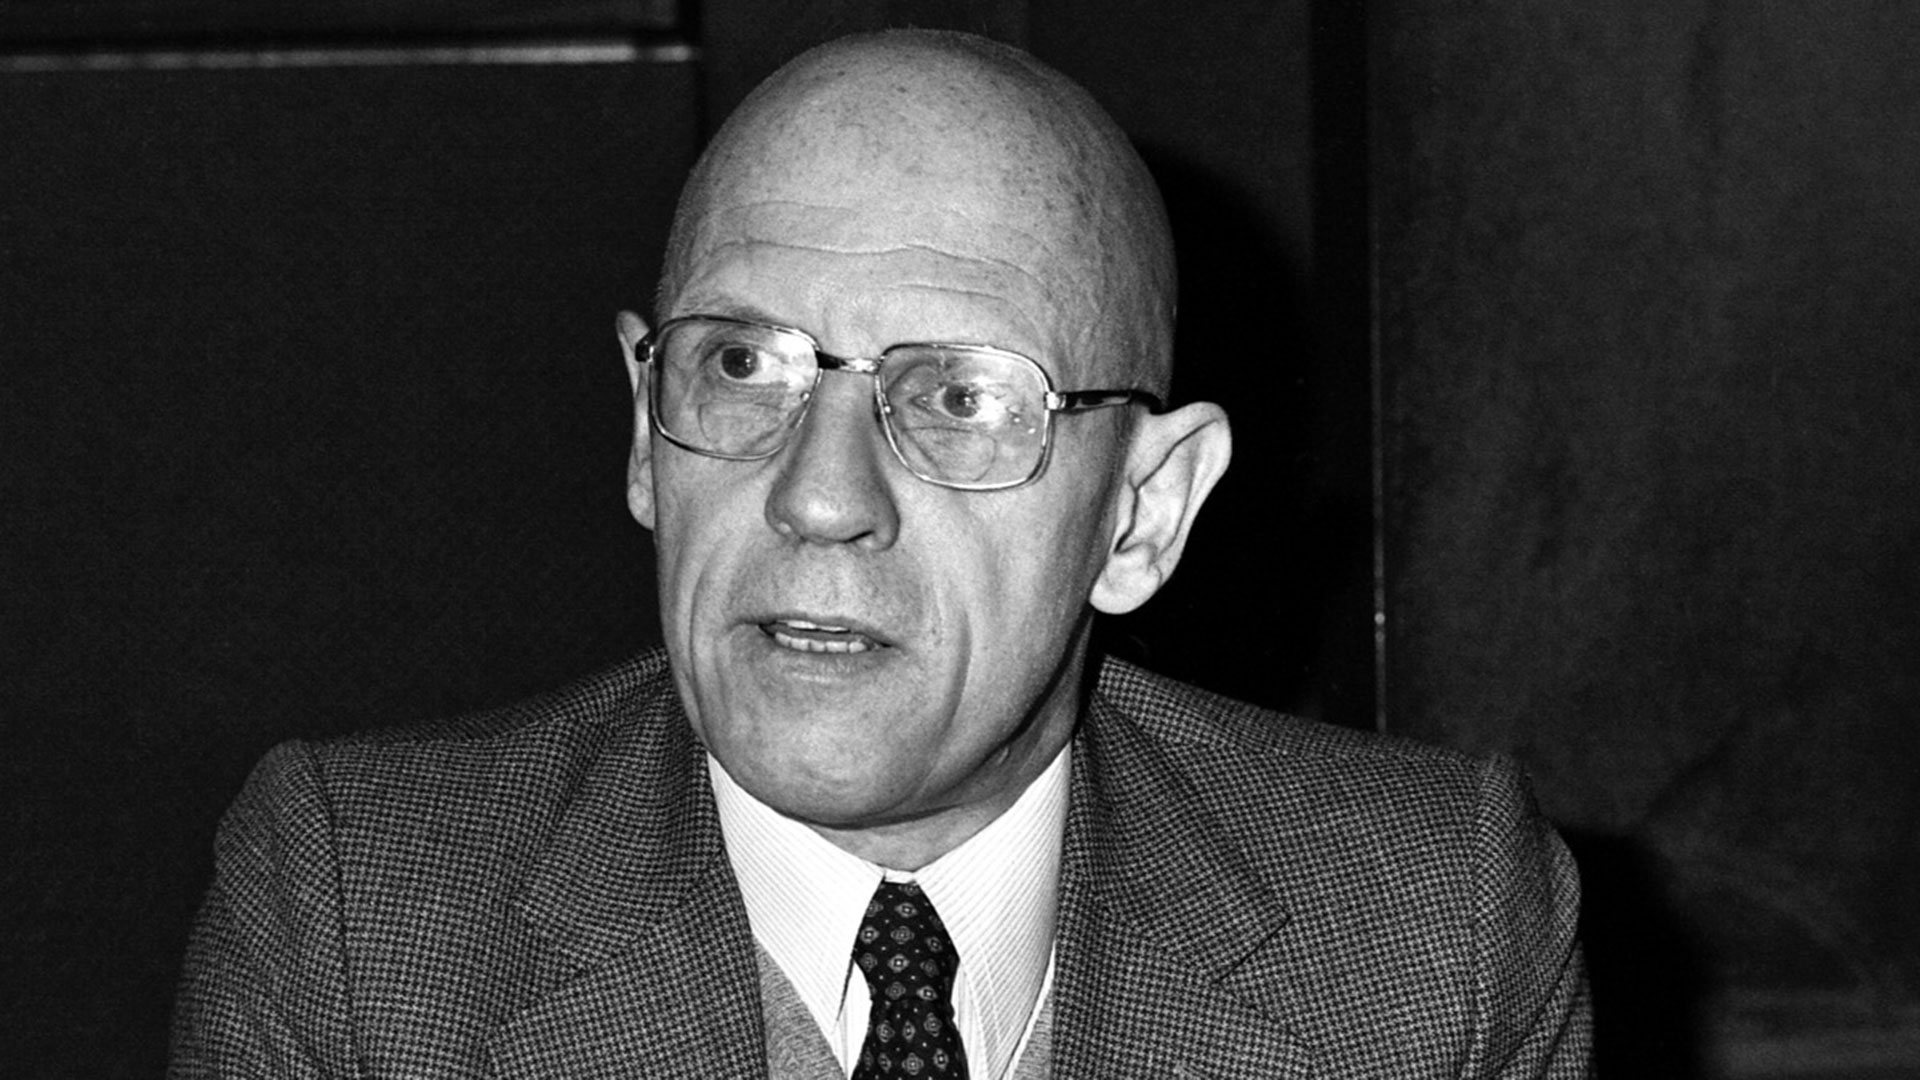 Michel Foucault (AP)